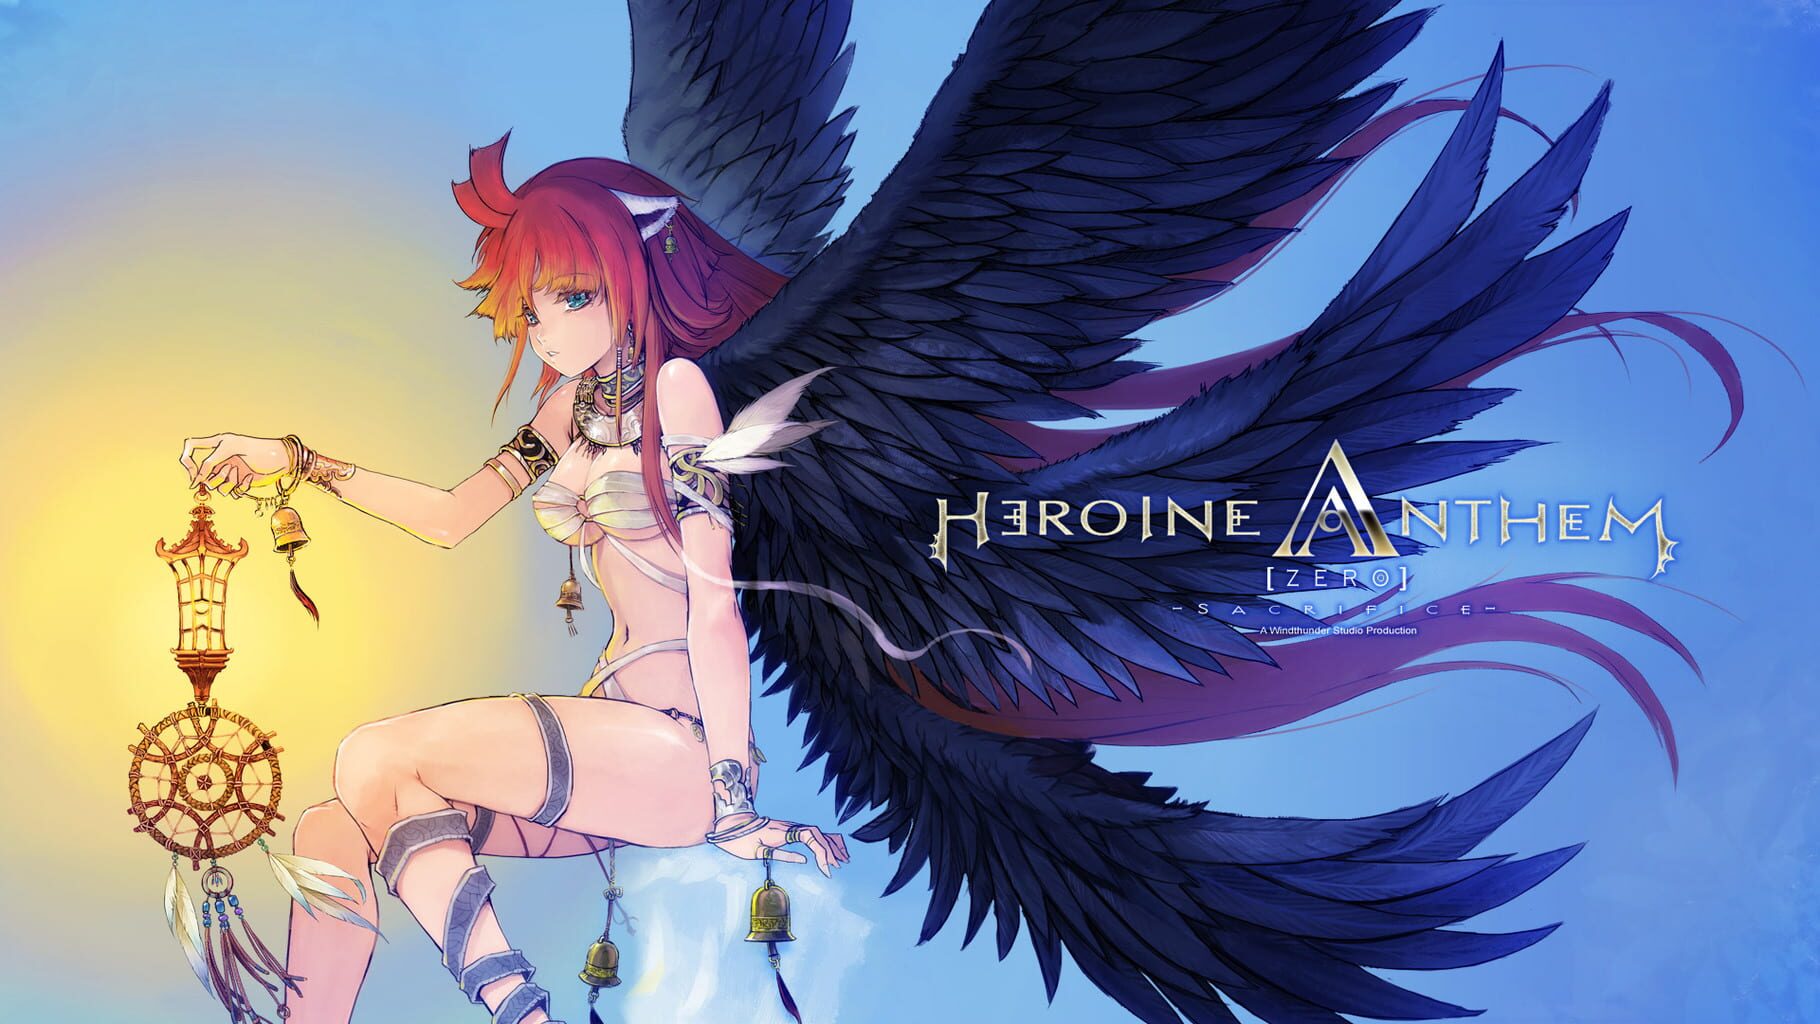 Heroine Anthem Zero: Episode 1 artwork